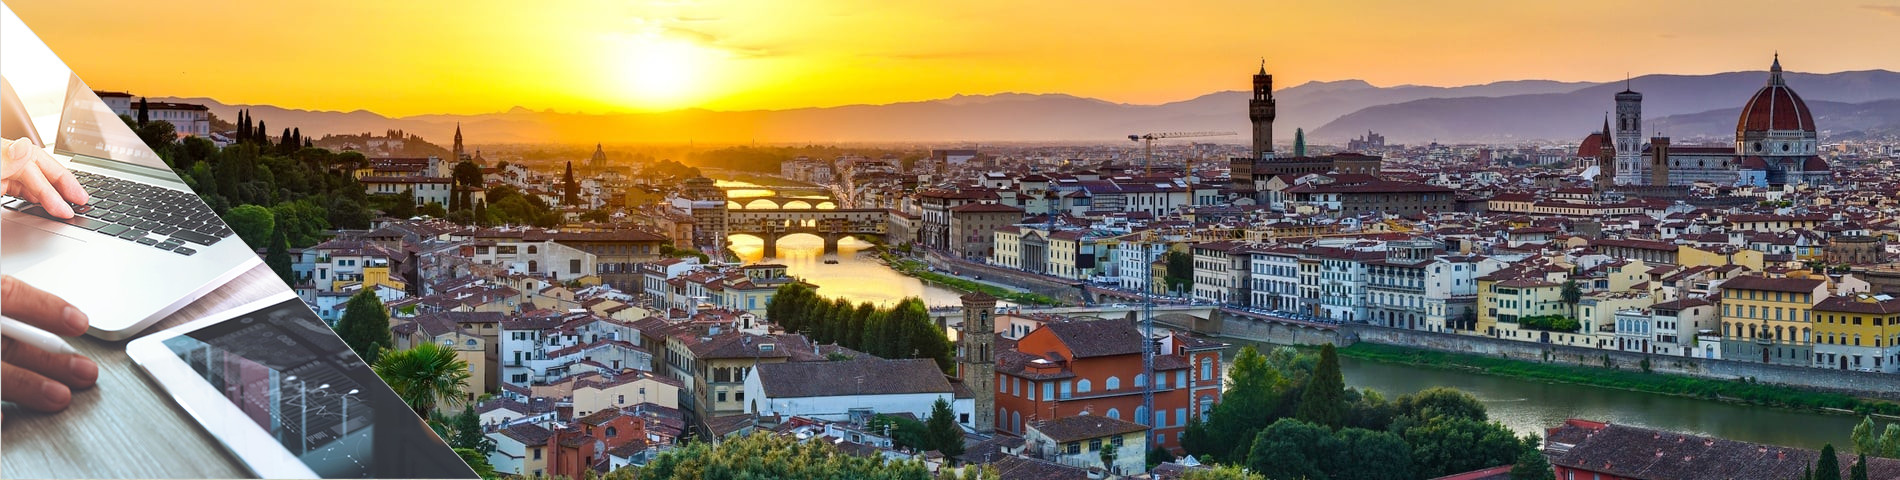 Florence - Italian & Digital Media